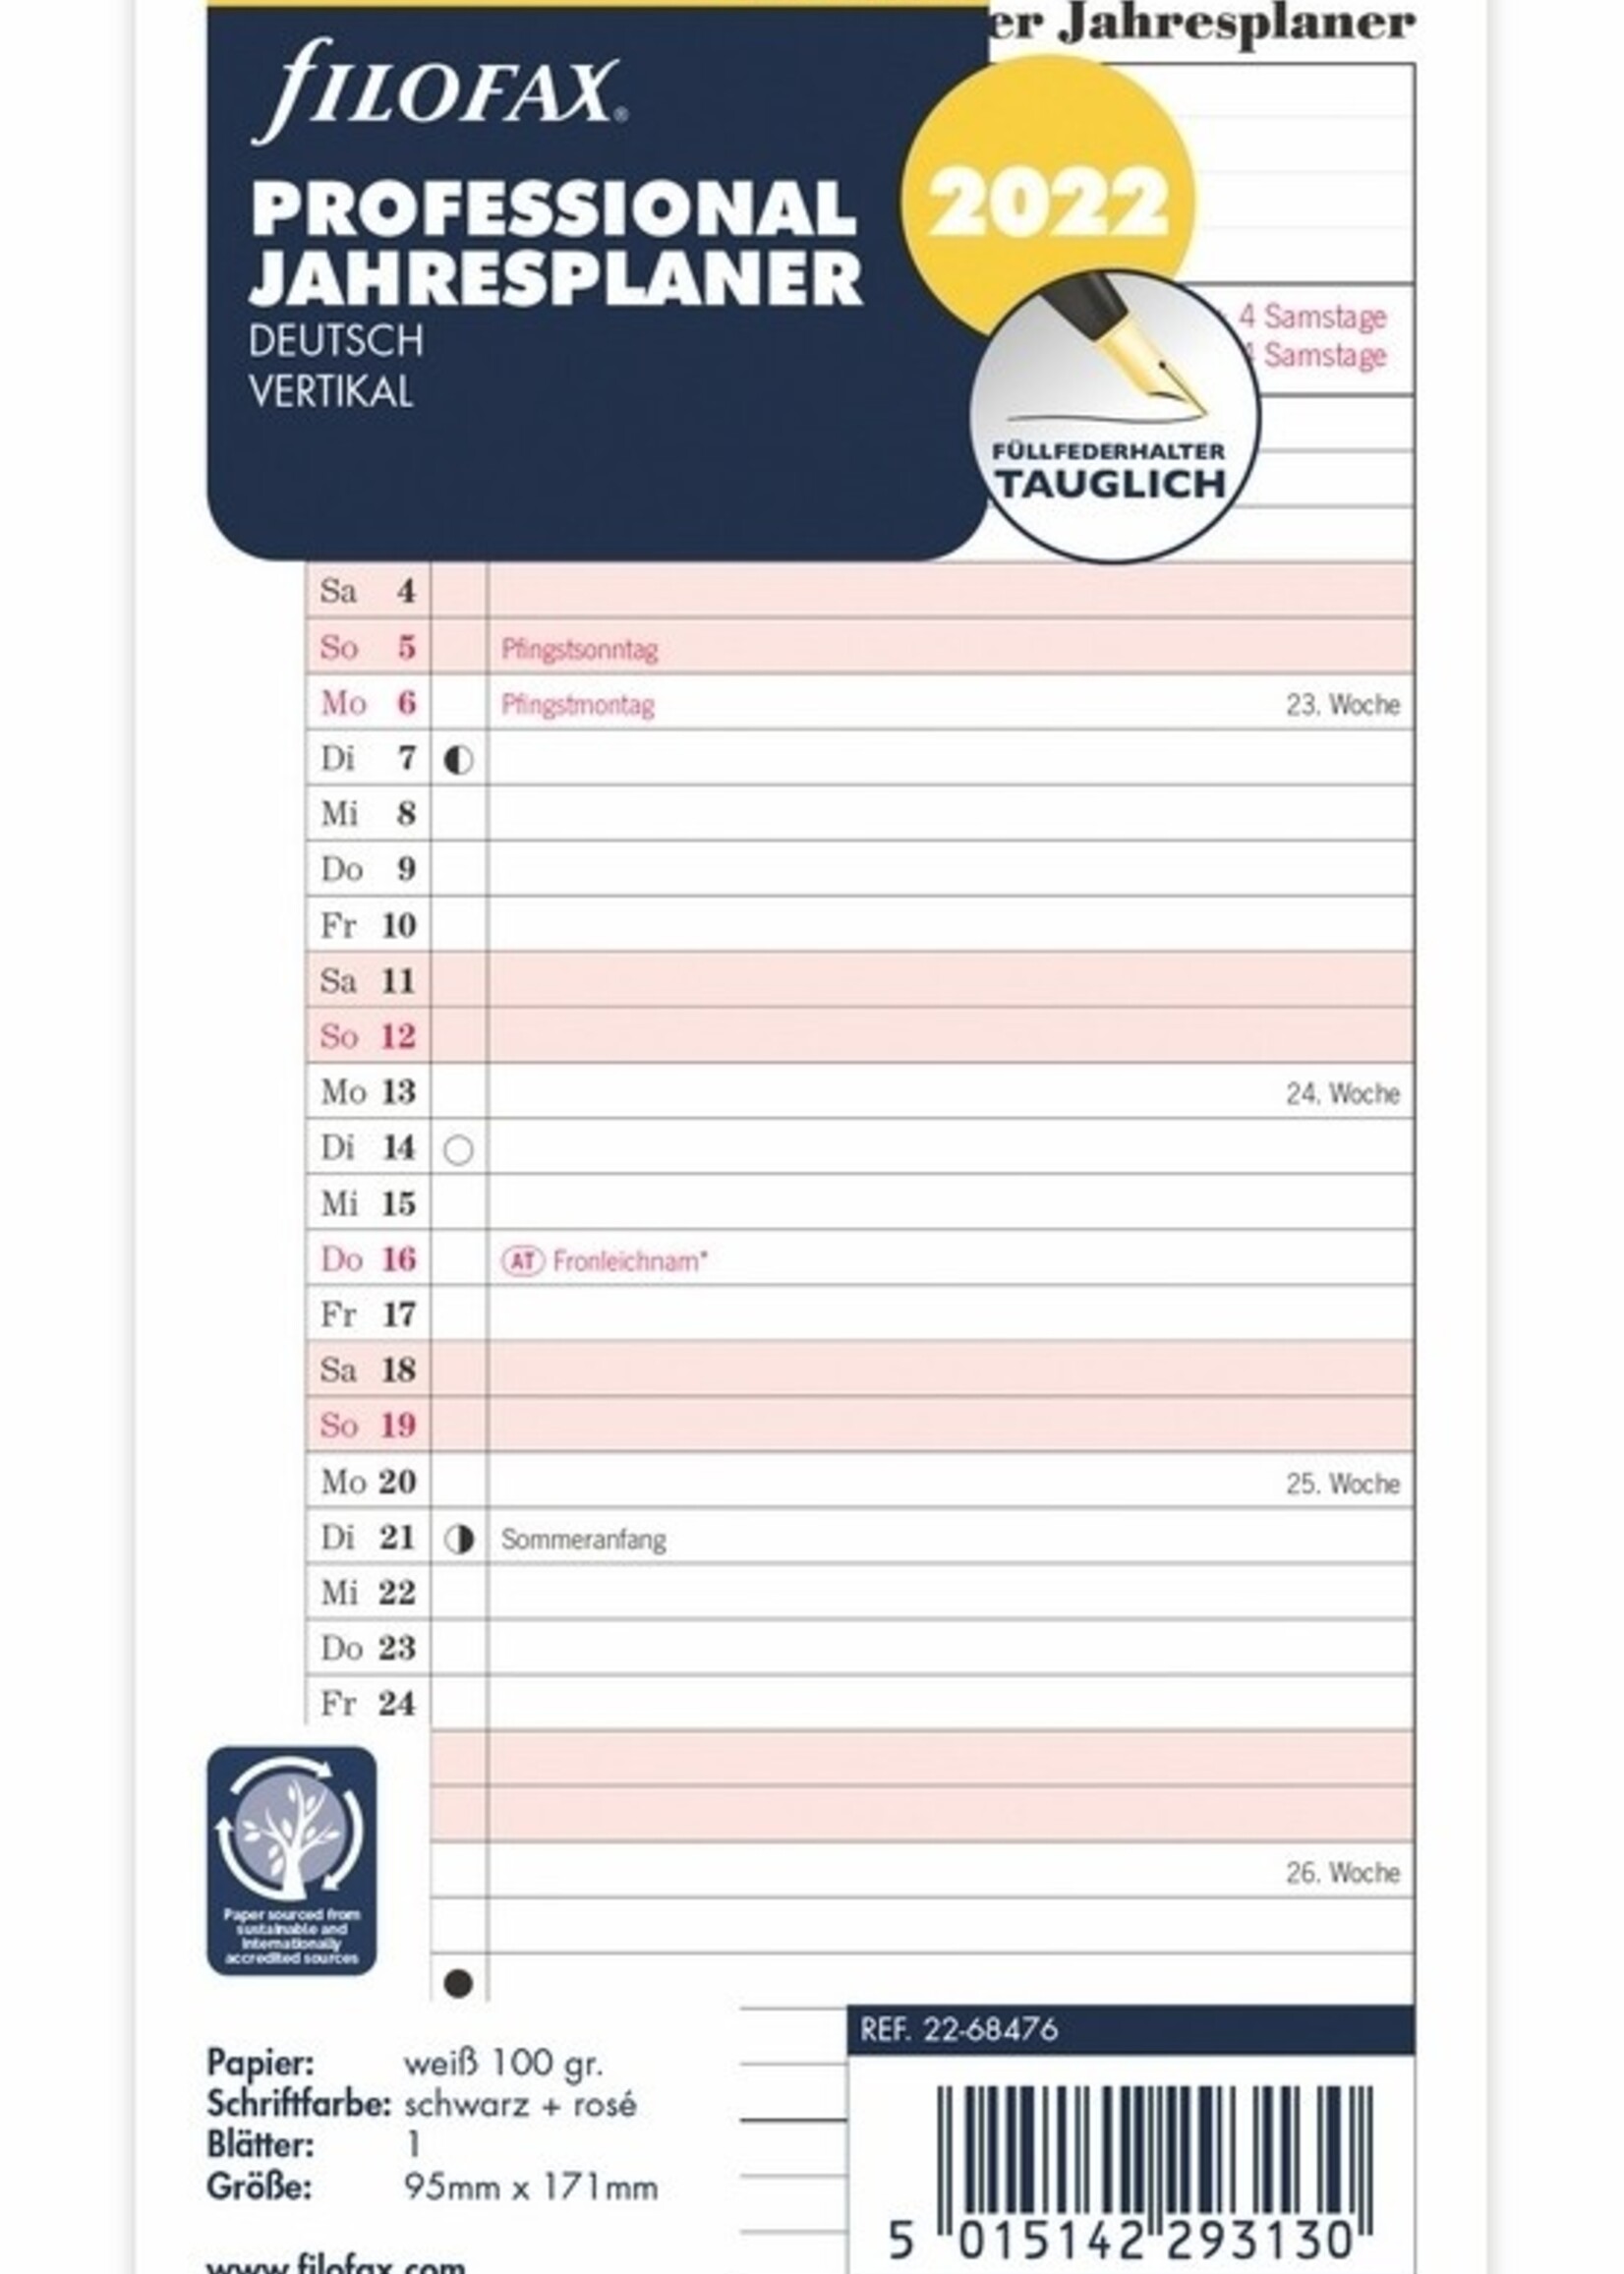 Filofax Filofax Personal Kalendereinlage 2024 Jahresplan Leporello deutsch Professional